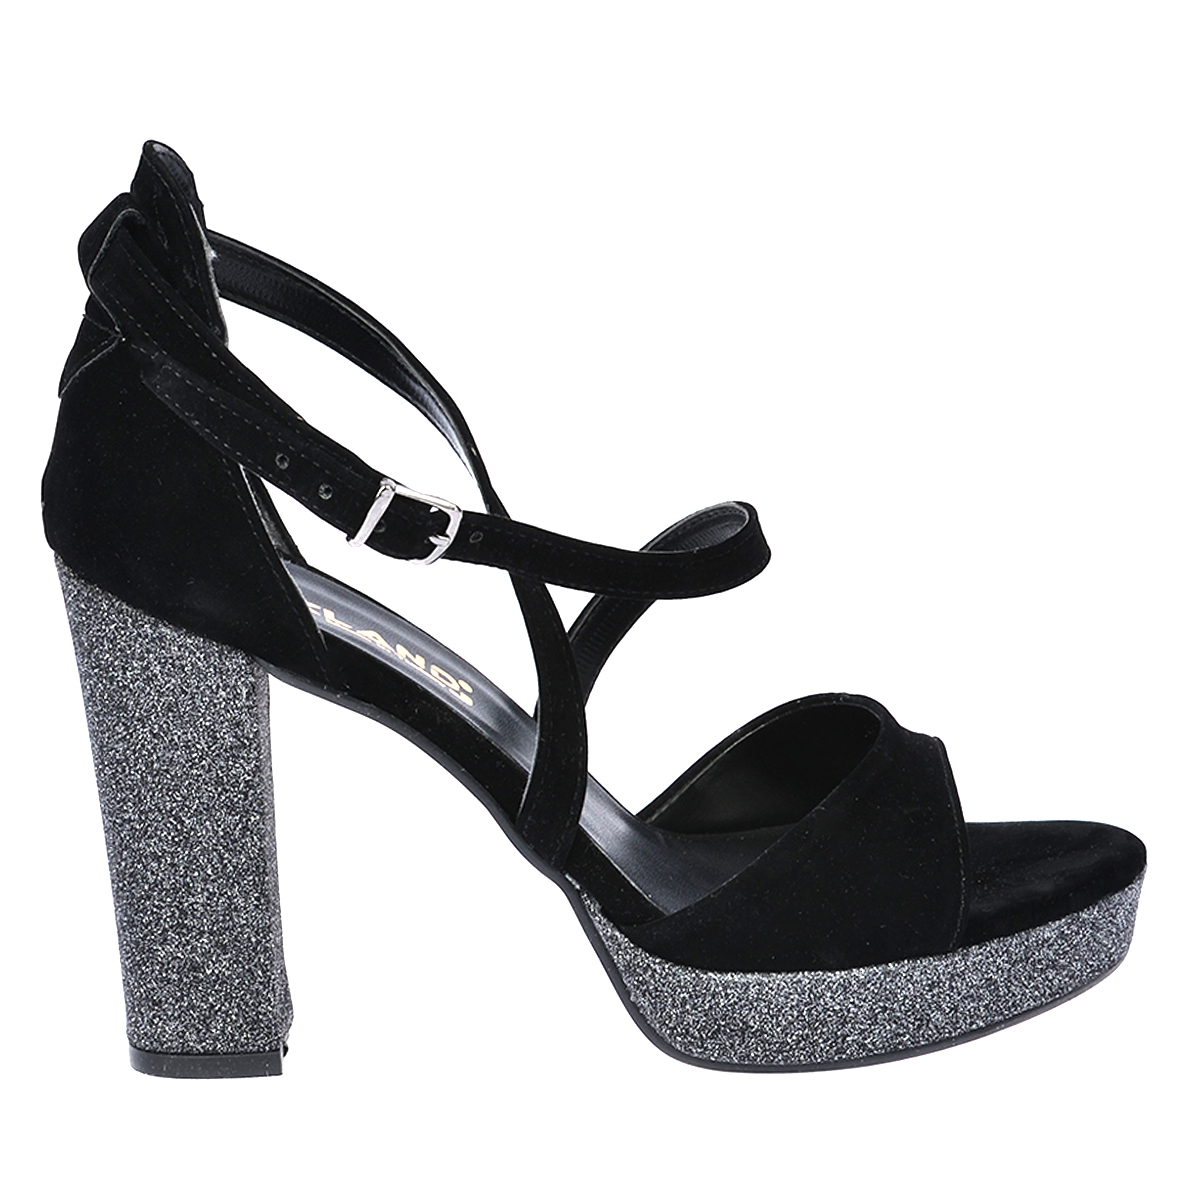 Flo 3210-2068 Simli Abiye 11 Cm Platform Topuk Bayan Sandalet Ayakkabı Siyah. 1